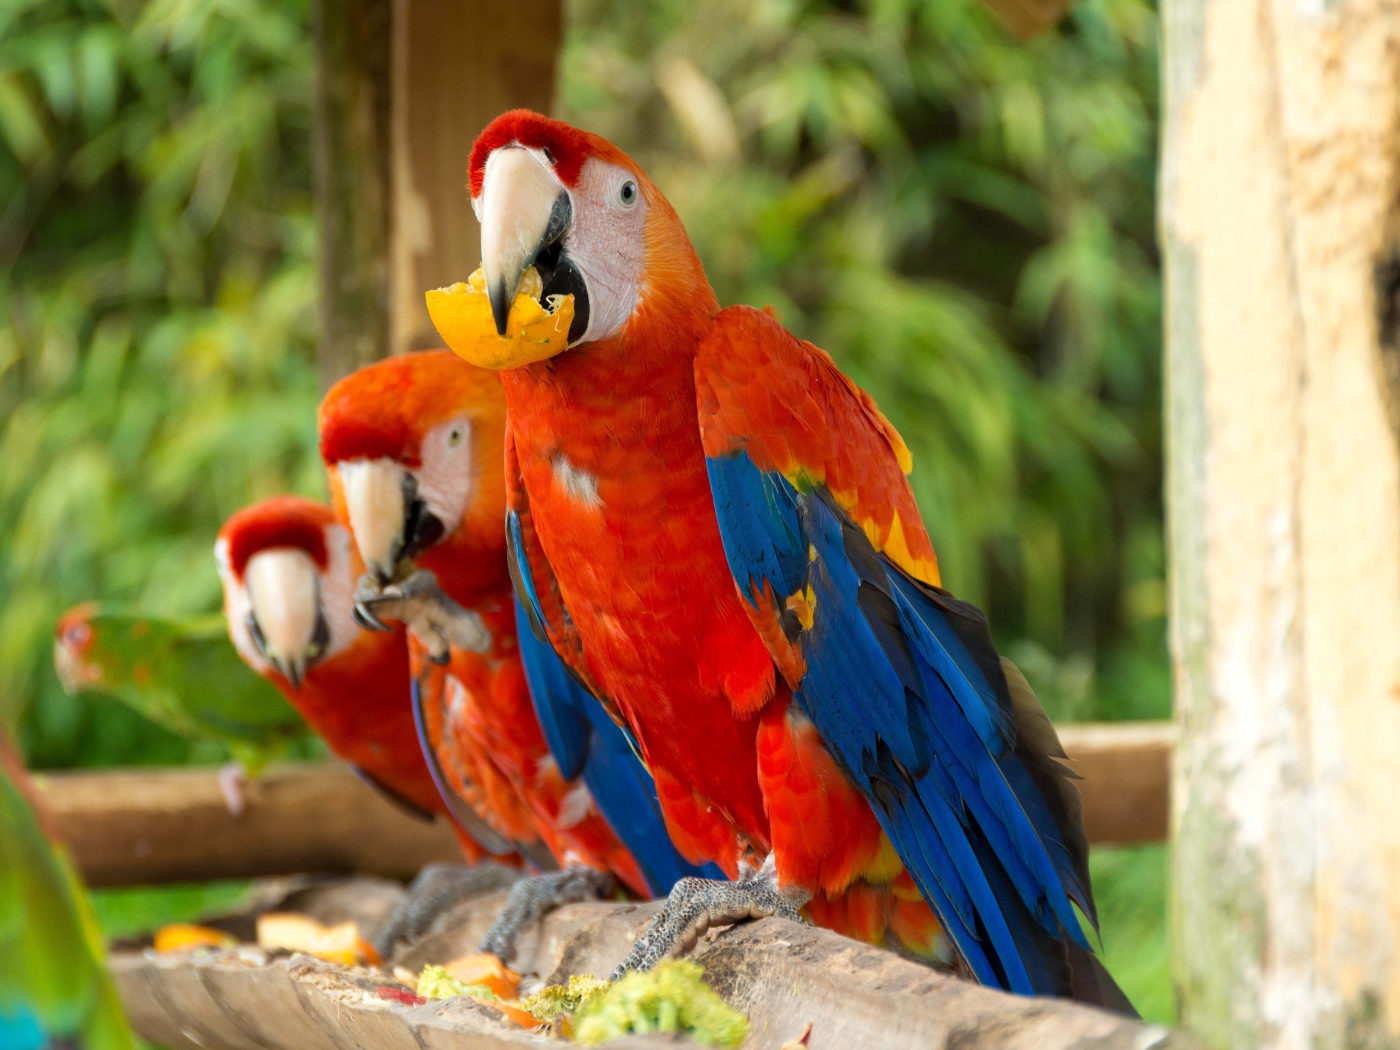 Три красных попугая ара сидит на ветке